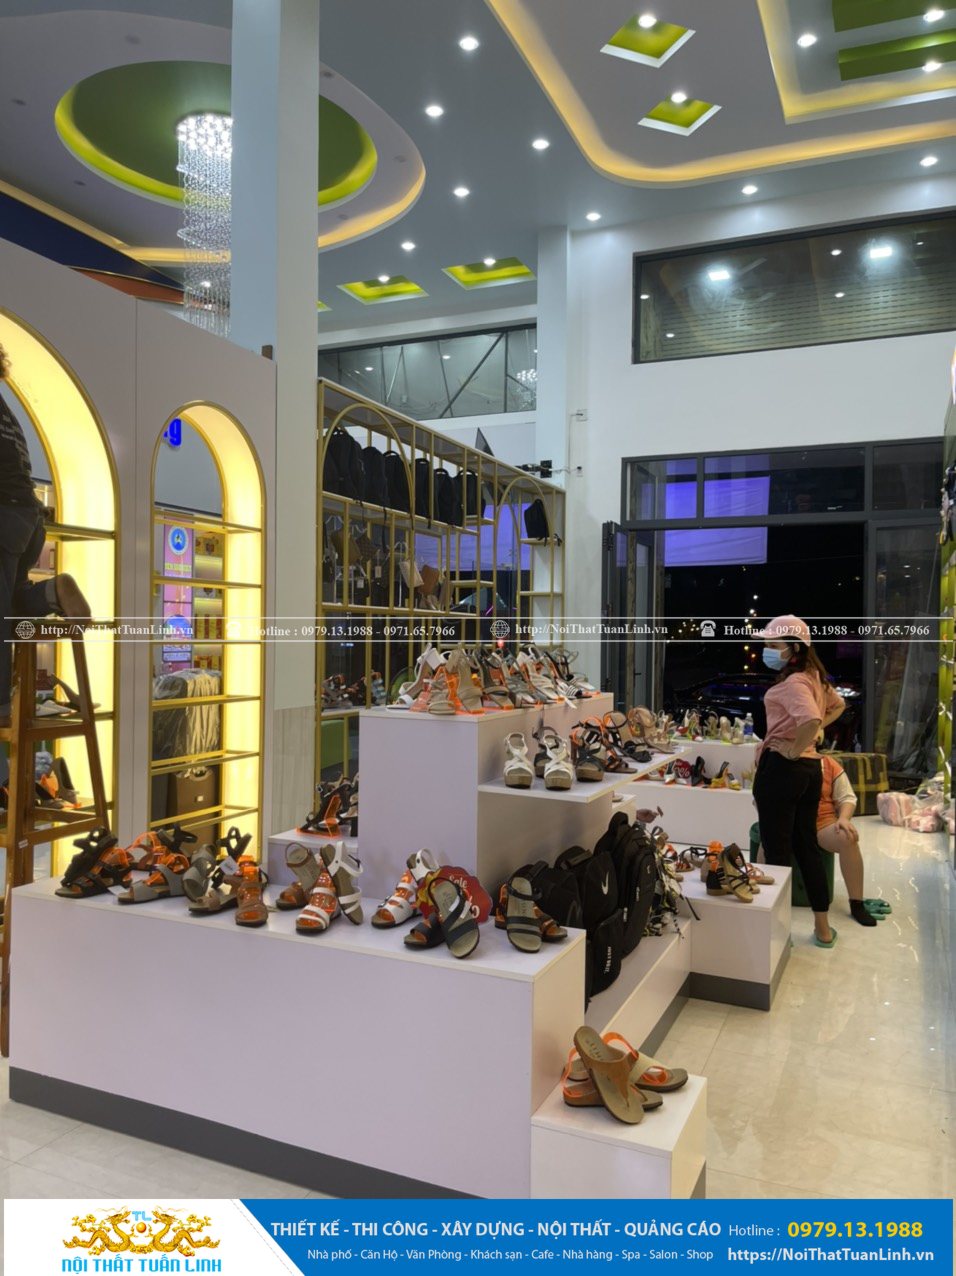 Báo giá thiết kế thi công nội thất shop thời trang Minh Khang Sport tại Phú Giáo Bình Dương 18